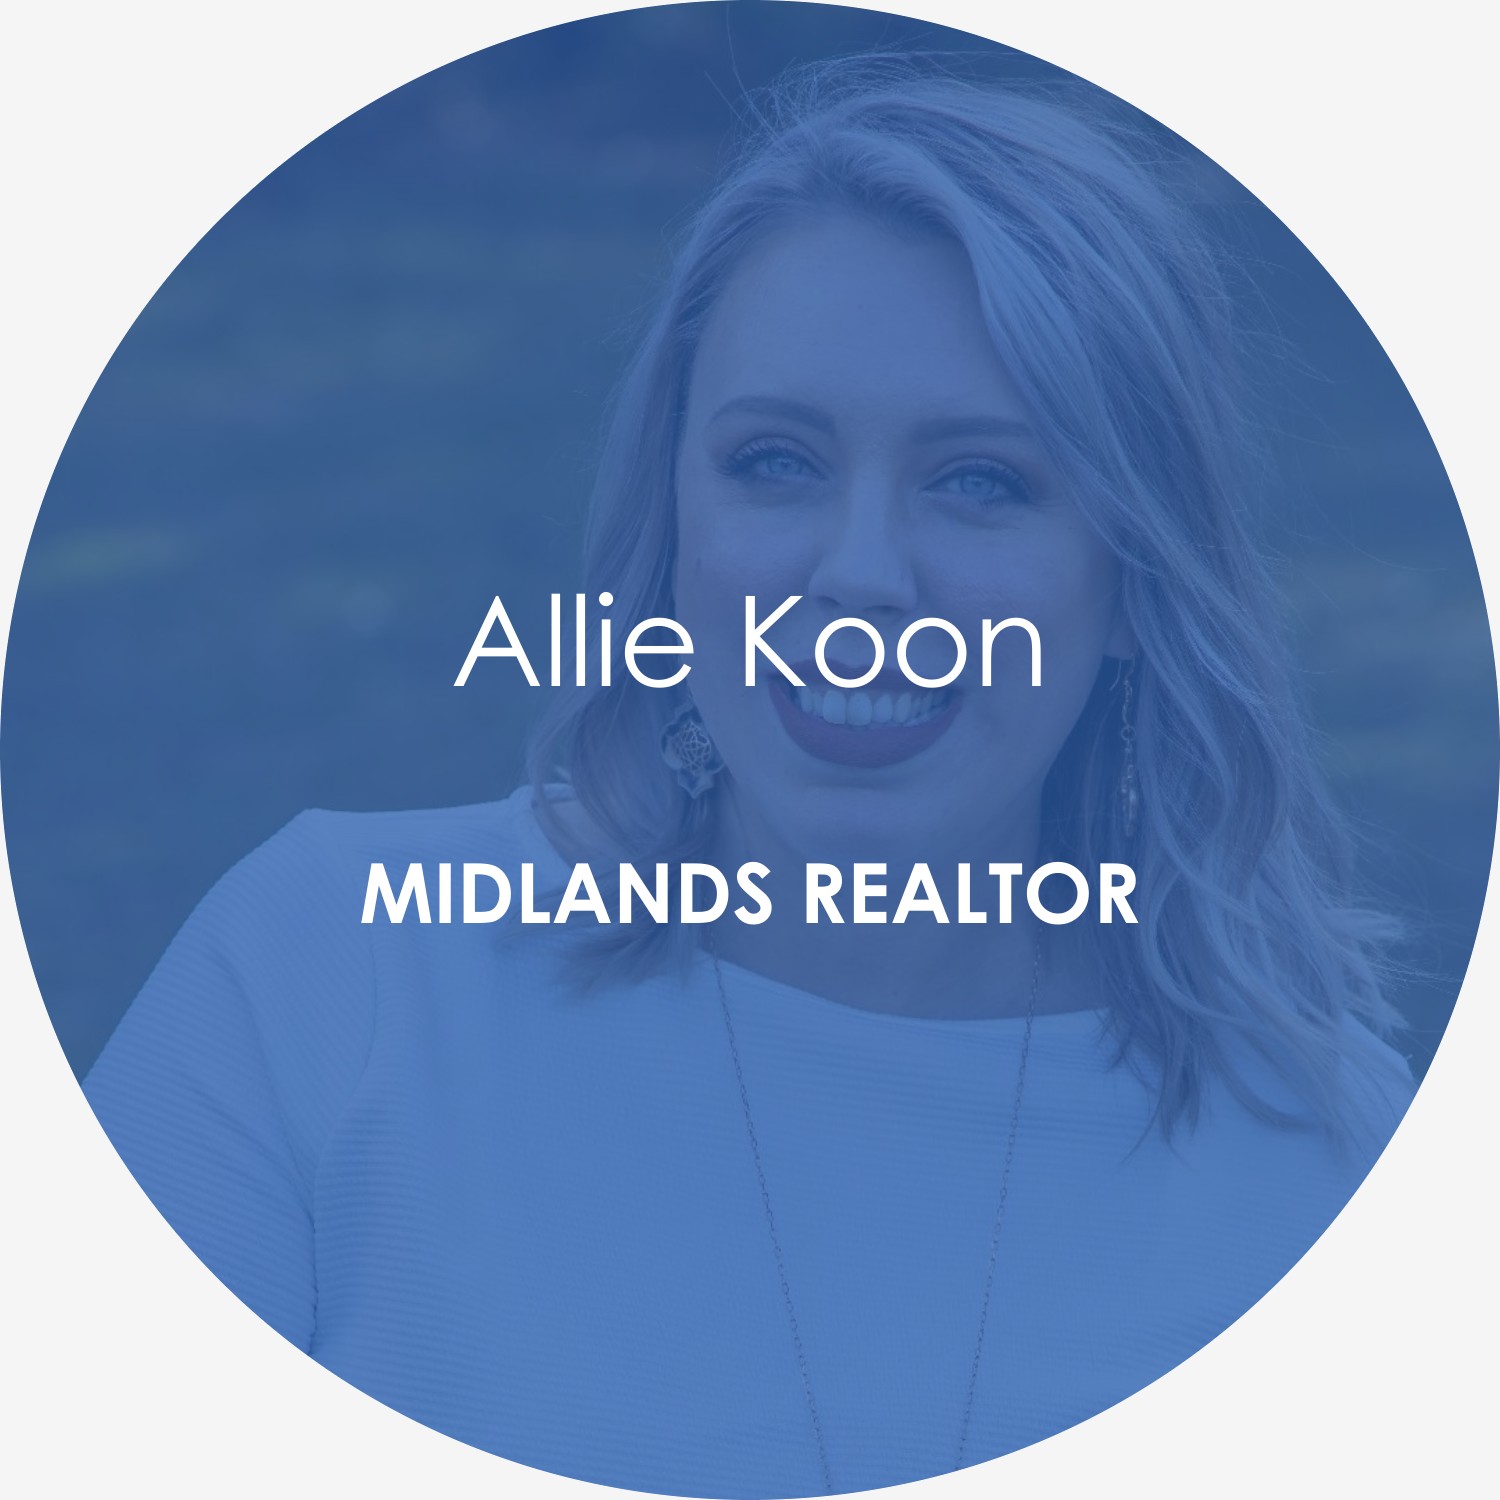 Allie Koon – Midlands realtor